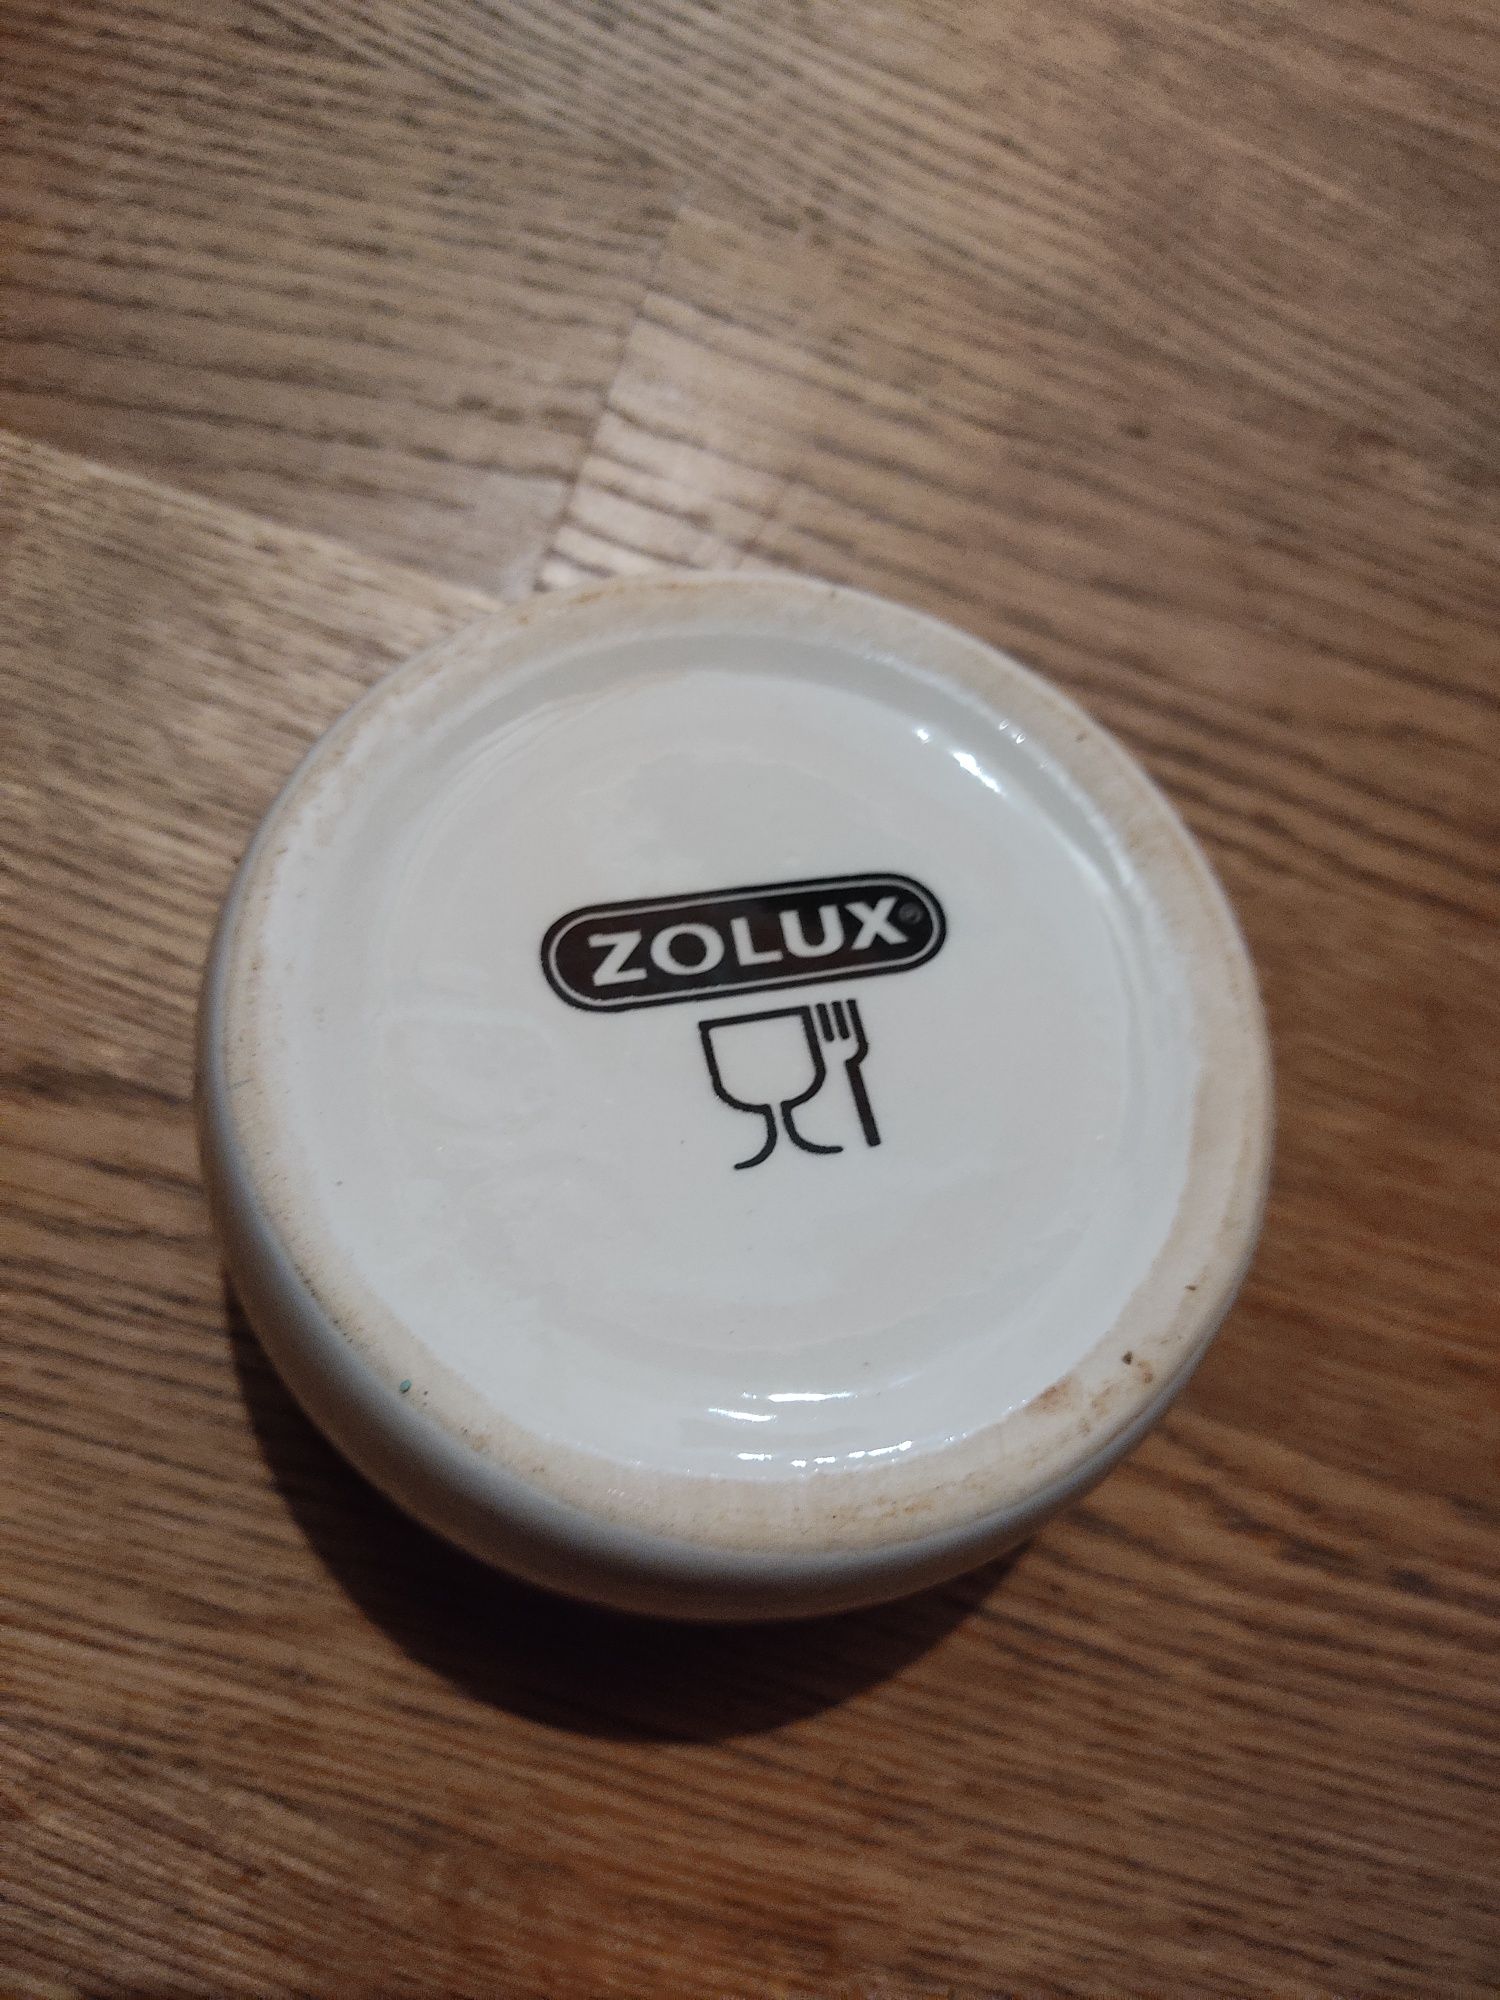 Zolux ceramiczna miska, miseczka